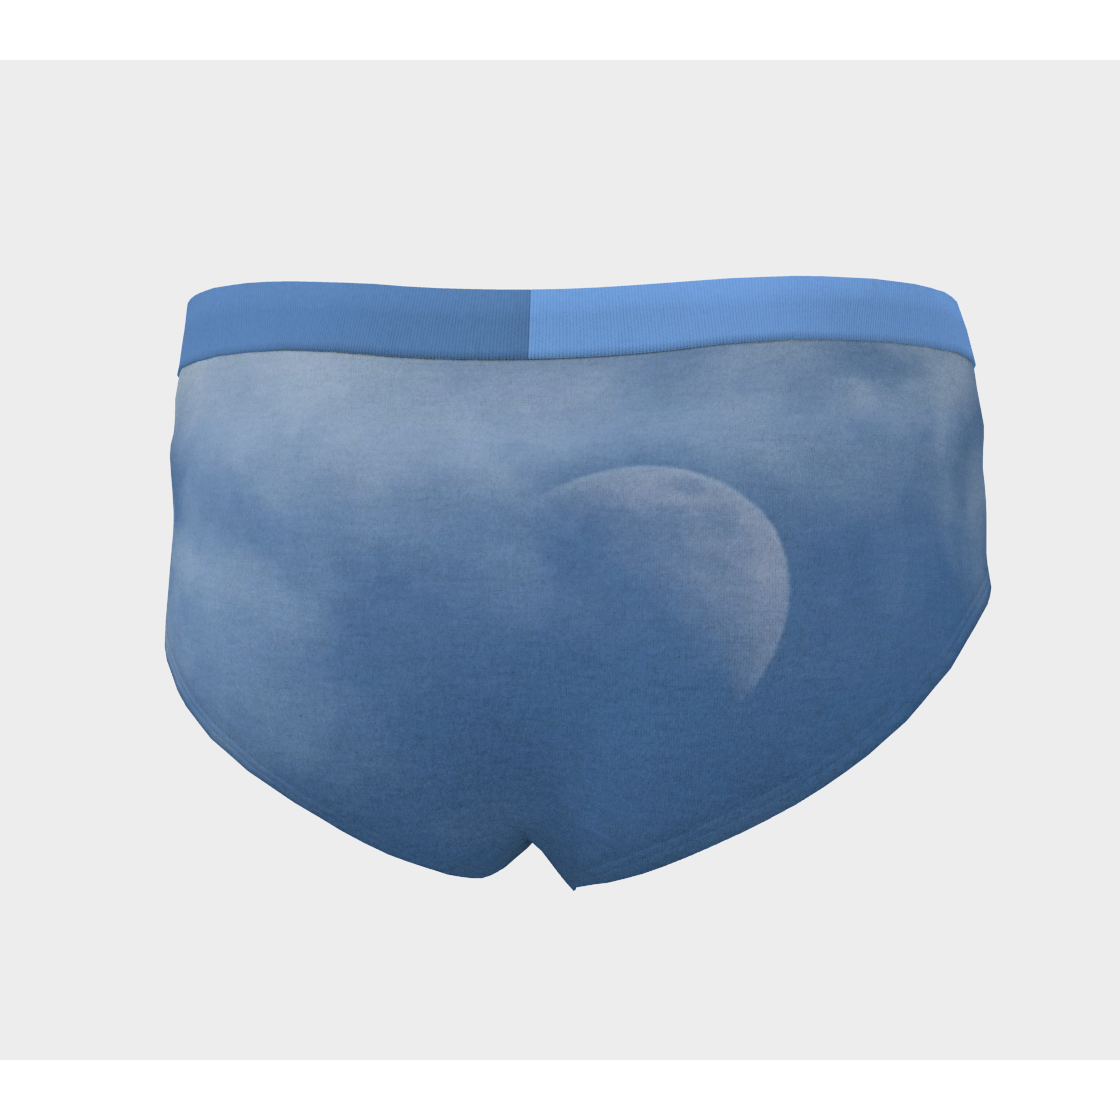 Cheeky Briefs, Women's Underwear, Half Moon Design, Back